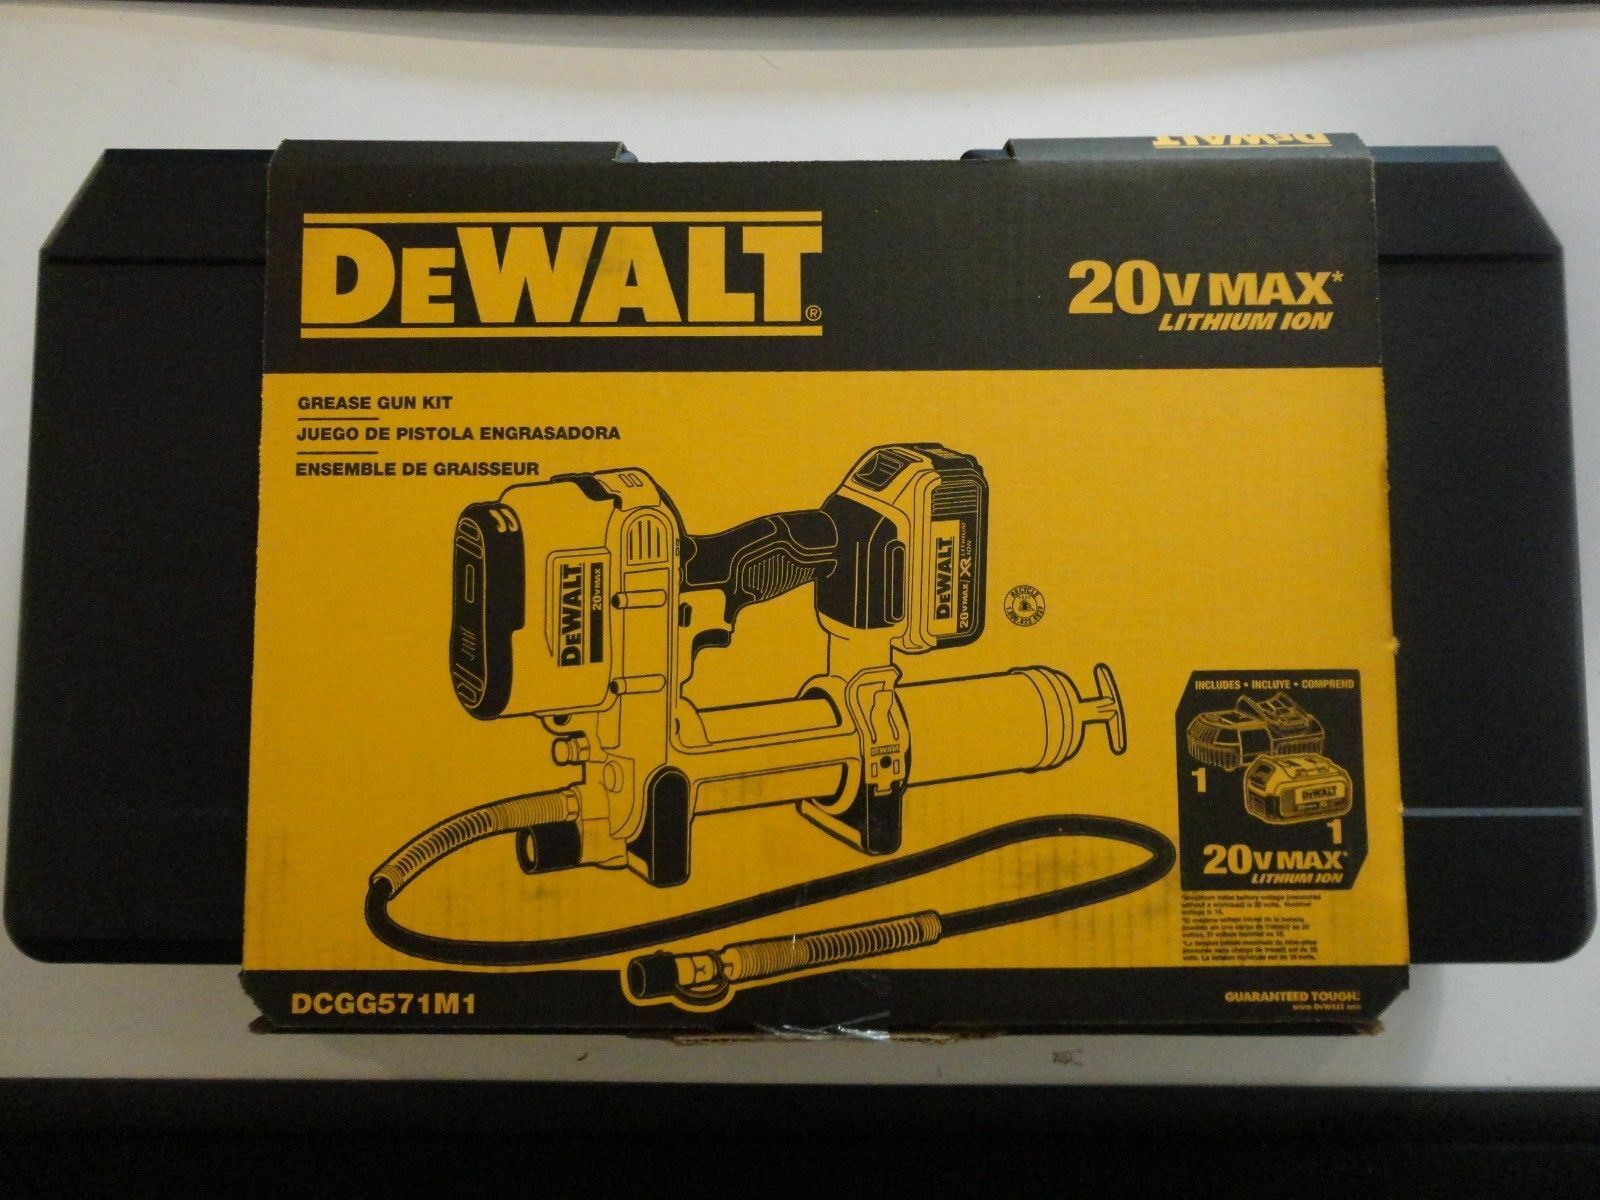 Dewalt Dcgg571m1 20-volt Max Lithium Ion Grease Gun